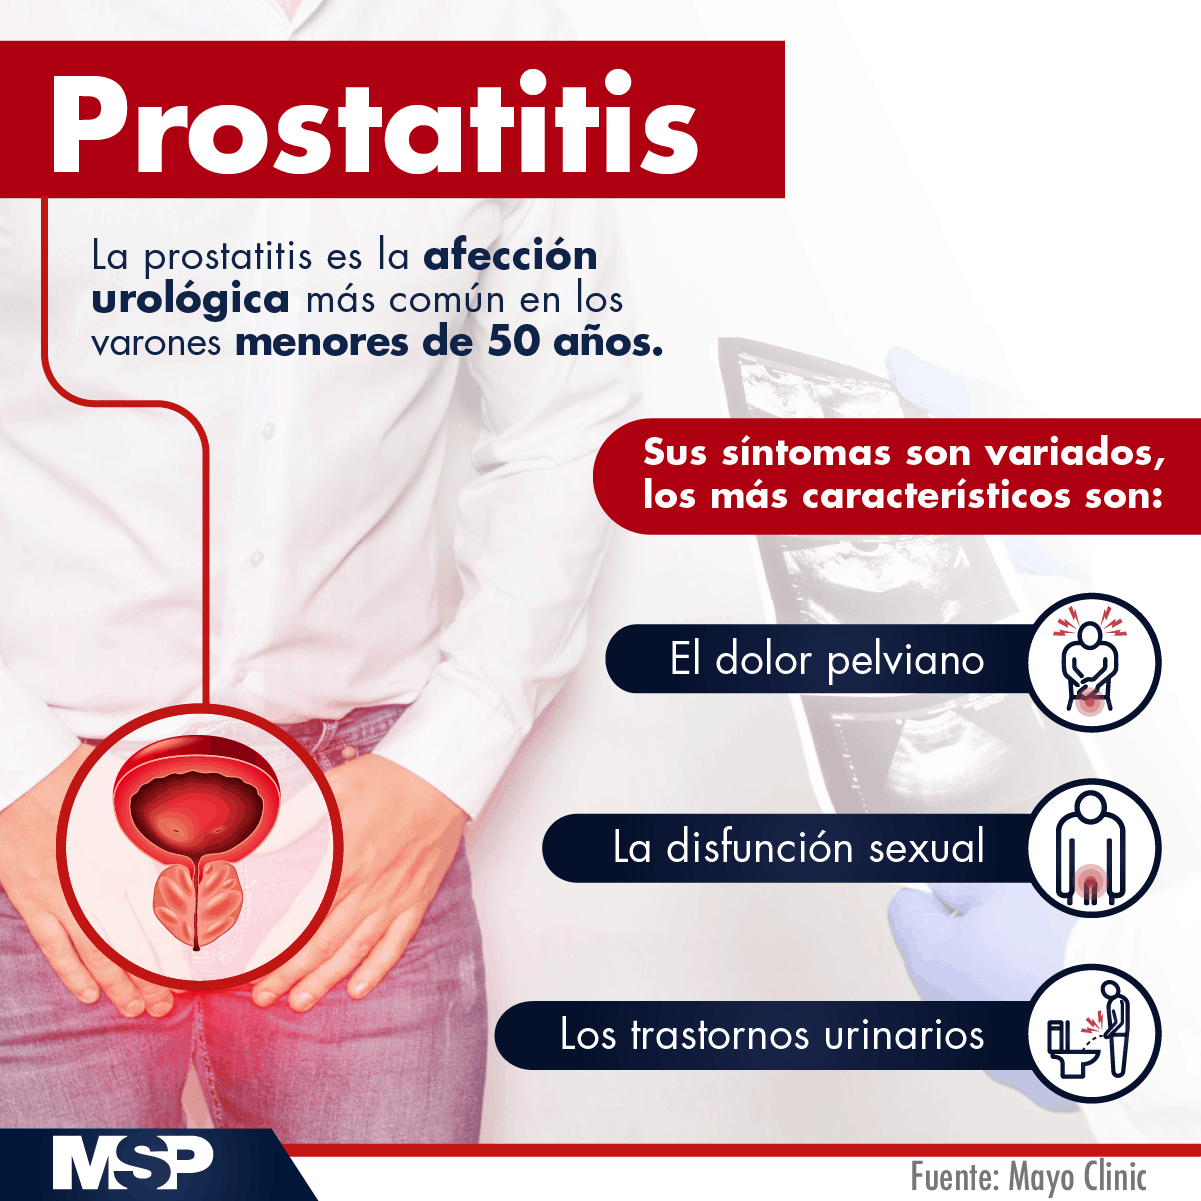 prostatitis és más